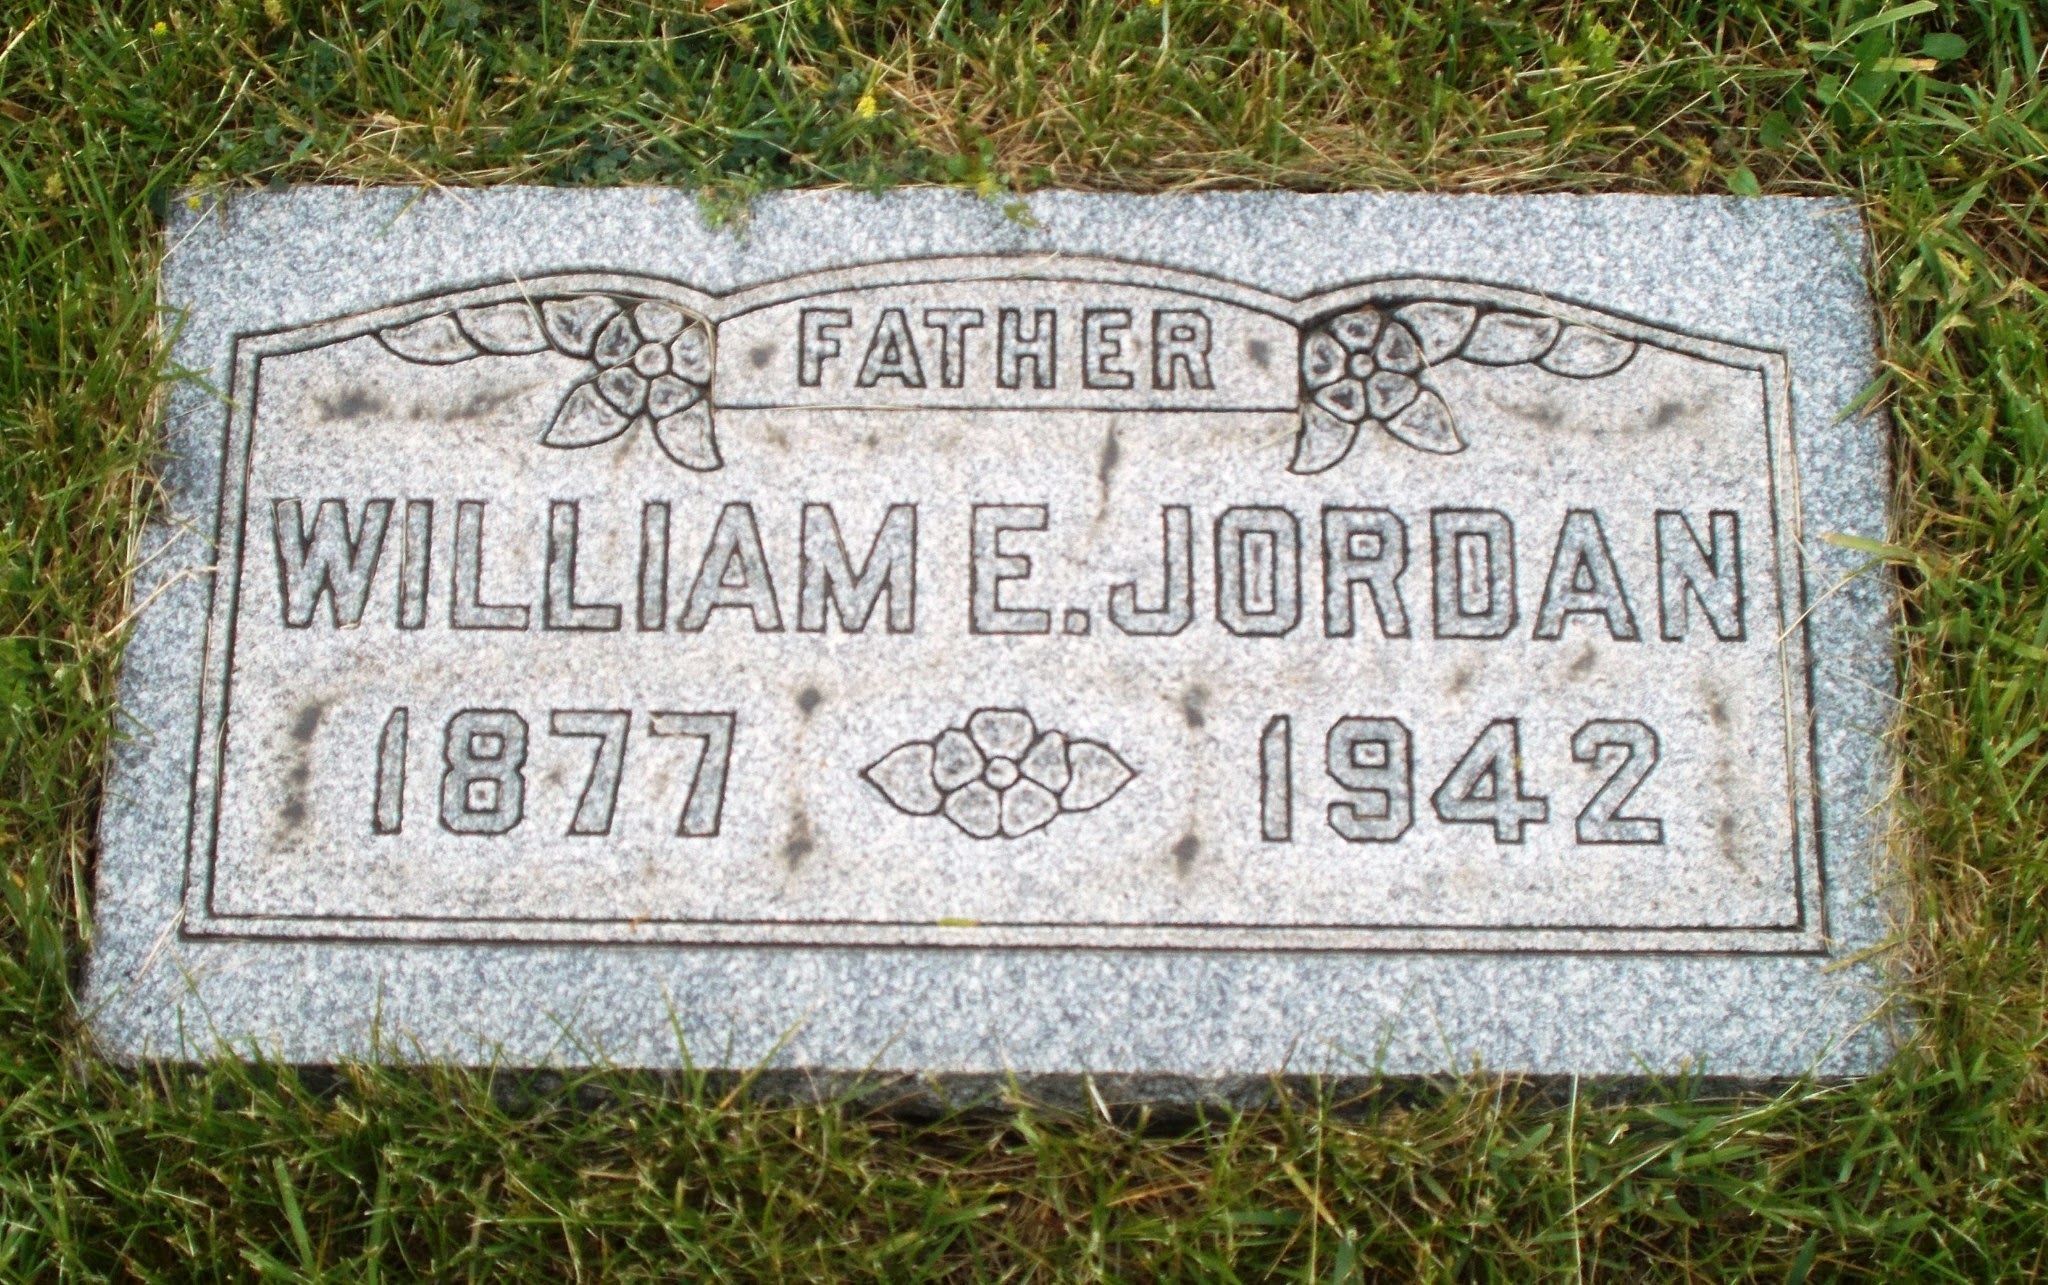 William E Jordan